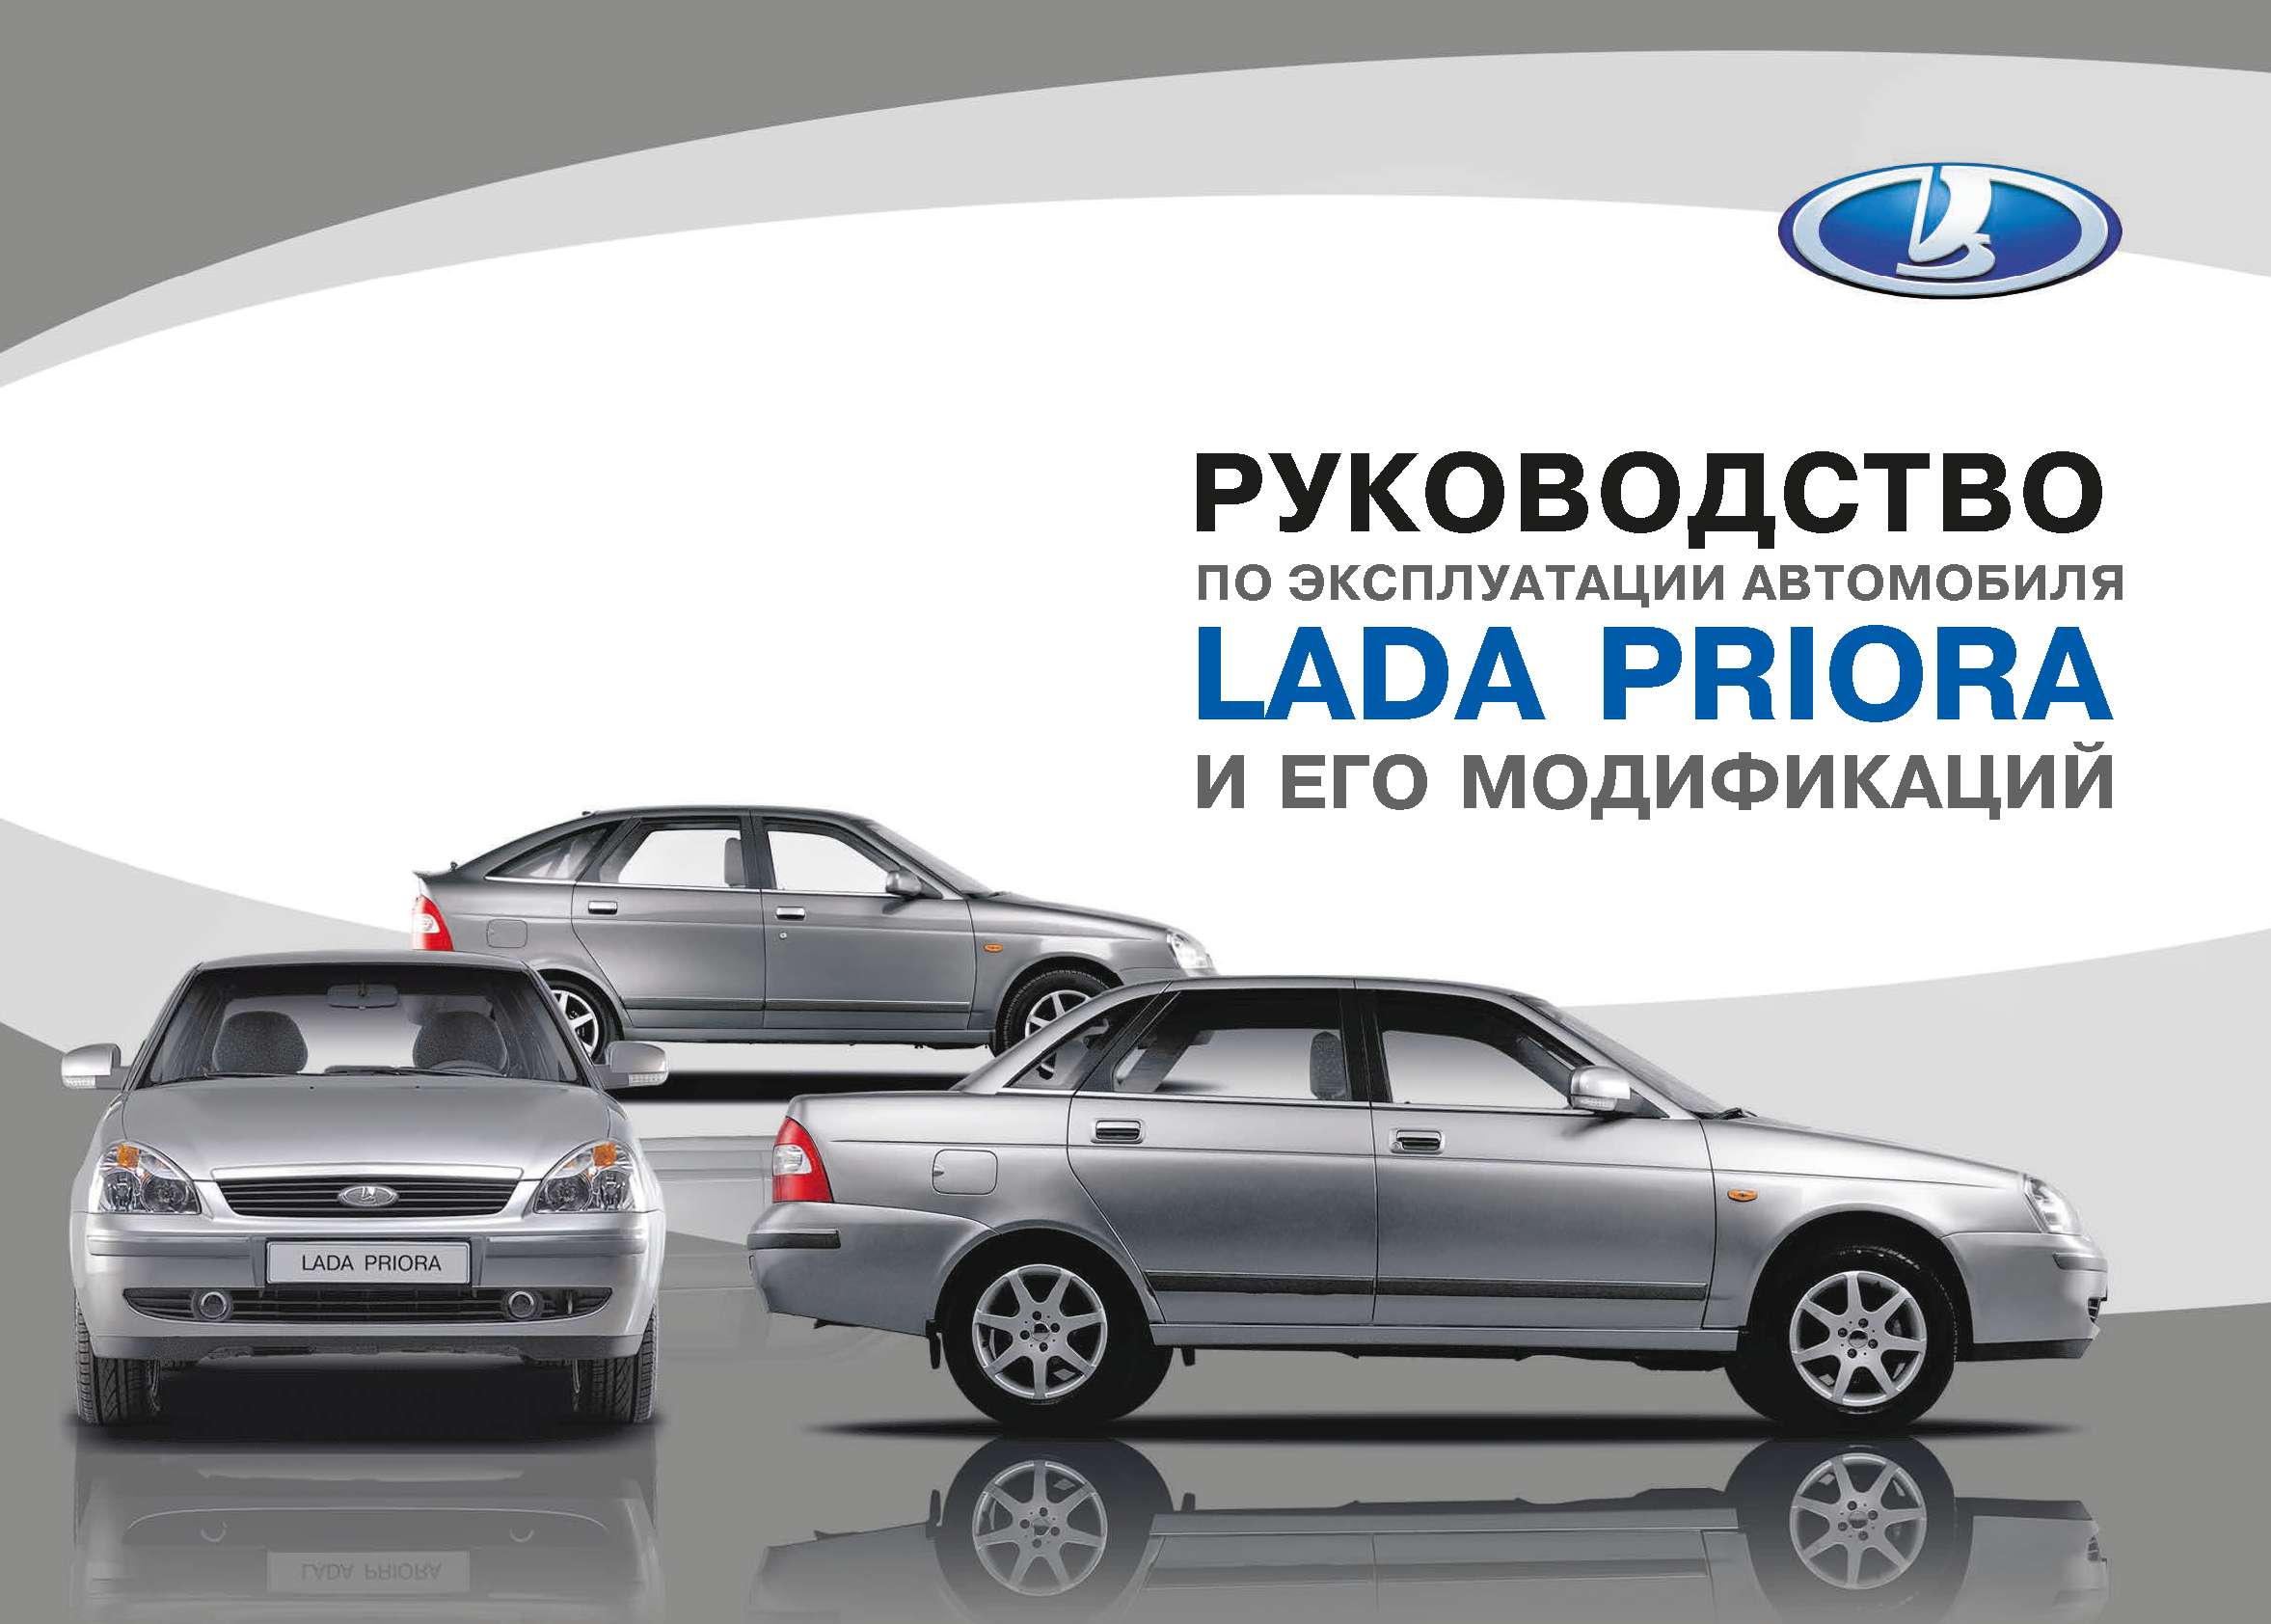 Лада Приора 02-2015 Руководство по эксплуатации автомобиля и его модификаций обложка